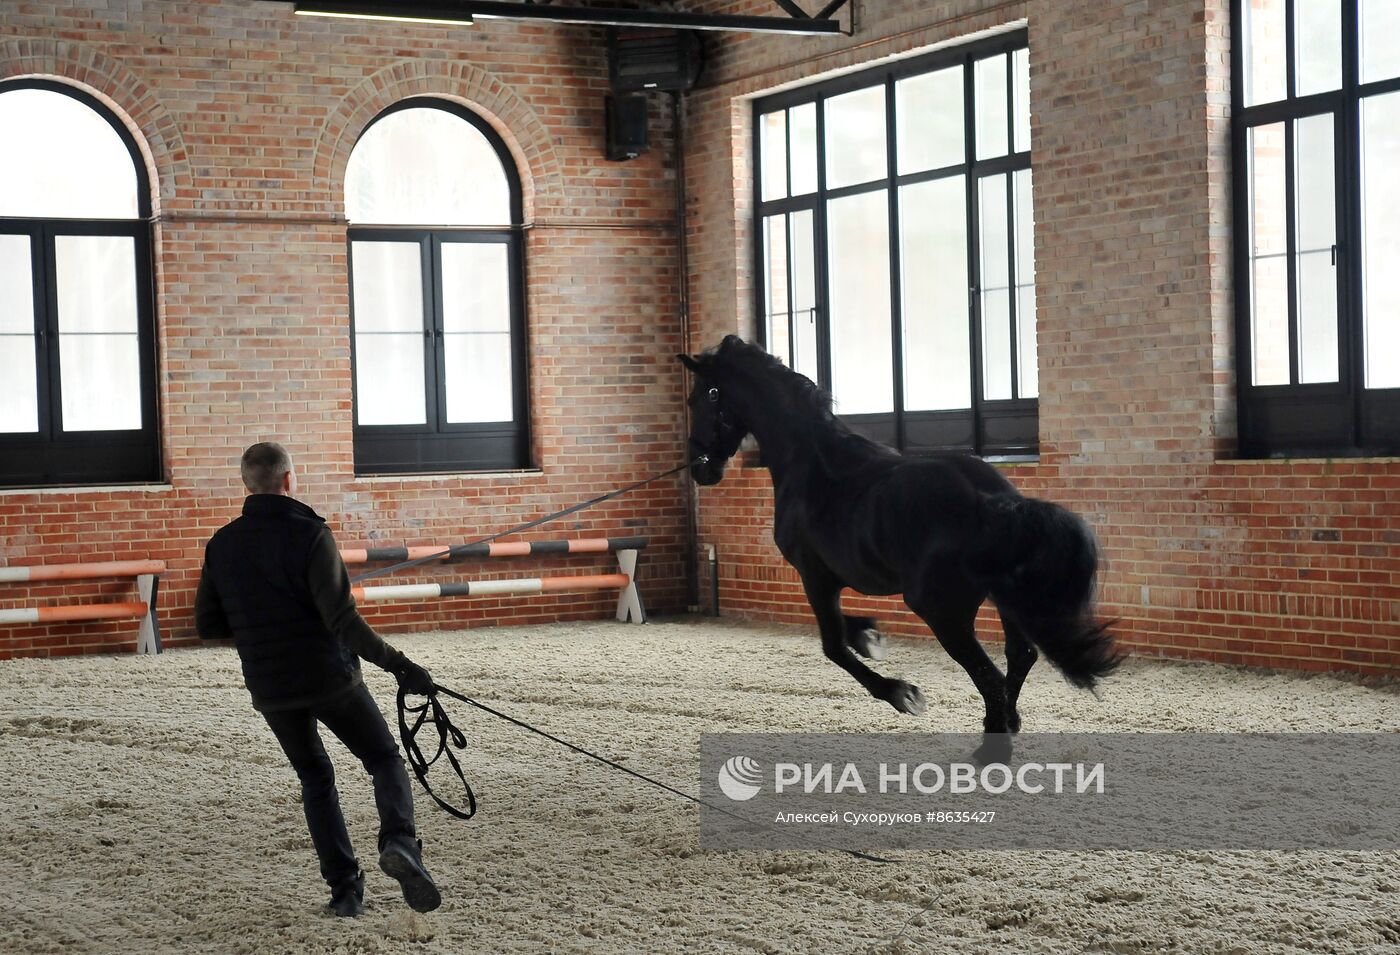 Работа конной усадьбы "Путь" в Тамбовской области